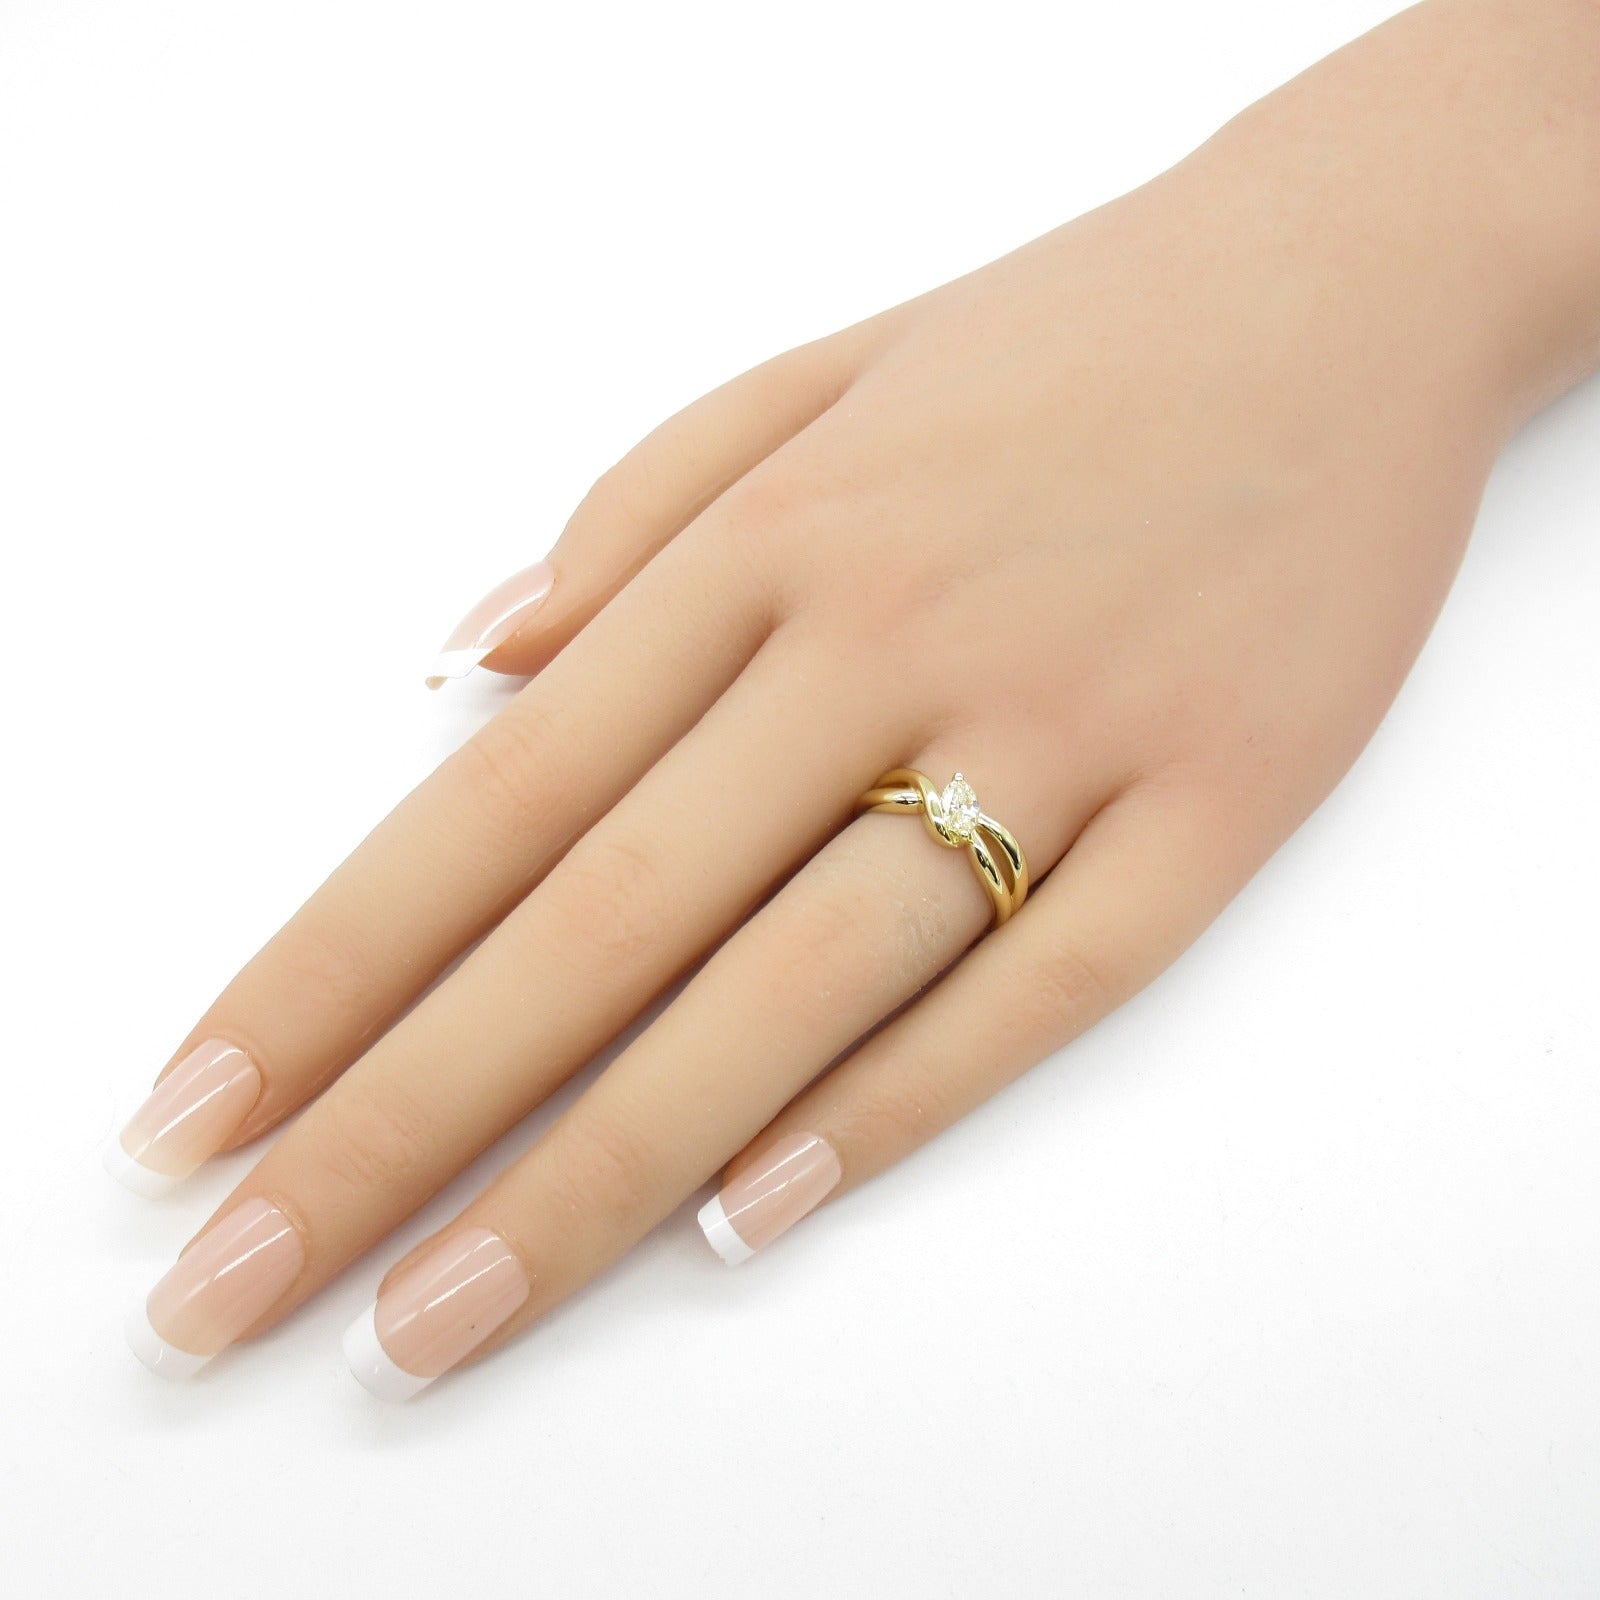 Jewelry Jewelry Diamond Ring Ring Ring Jewelry K18 (Yellow G) Diamond  Yellow Diamond 5.3g